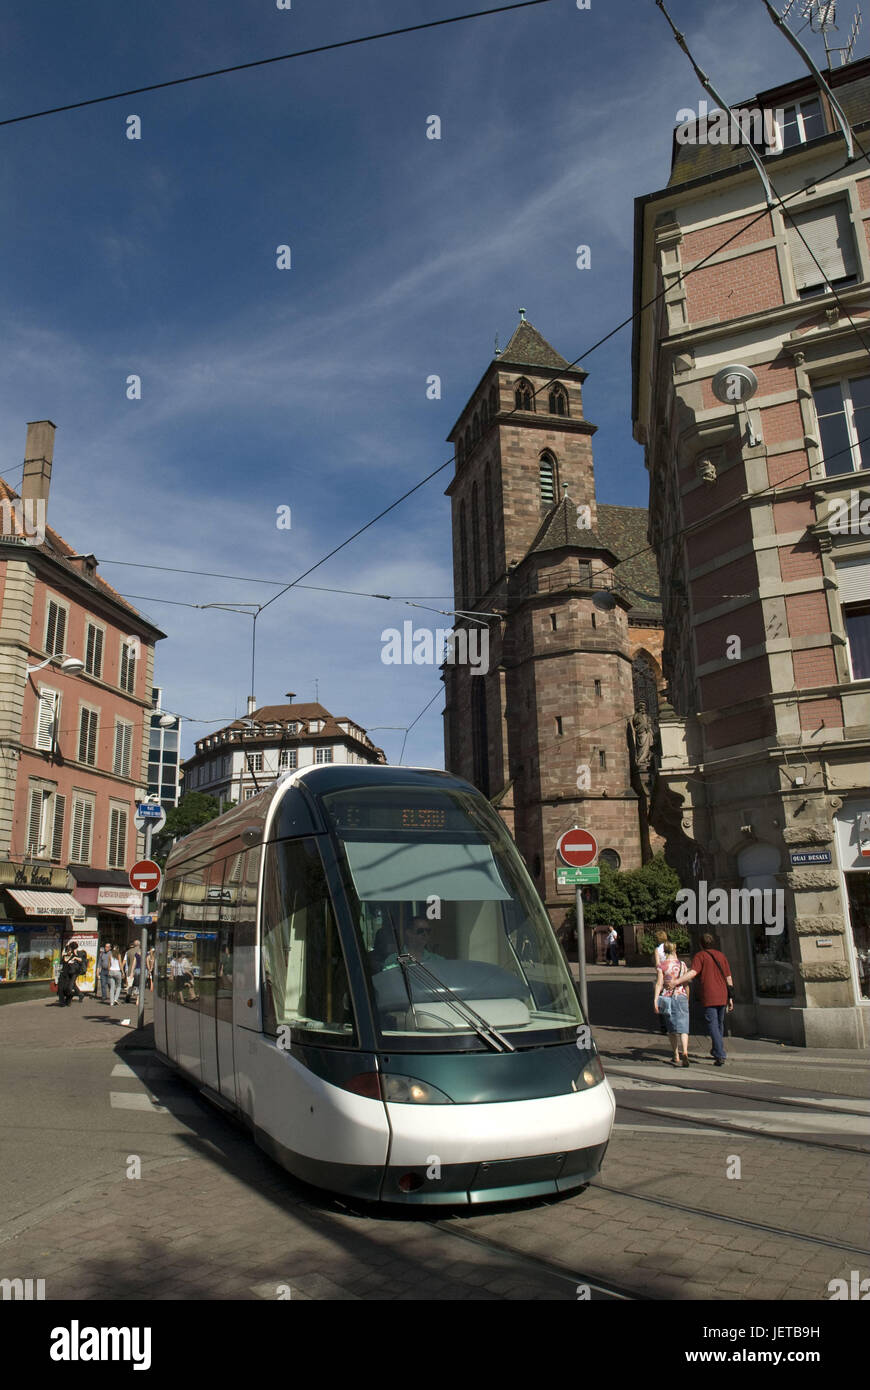 France, Alsace, Strasbourg, centre-ville, tramway, de piétons, de l'Europe, la destination, la ville, les moyens de transport, publiquement, de la trajectoire, le transport ferroviaire, le trafic à courte distance, à l'extérieur, les gens, les touristes, les bâtiments, maisons, architecture, Banque D'Images